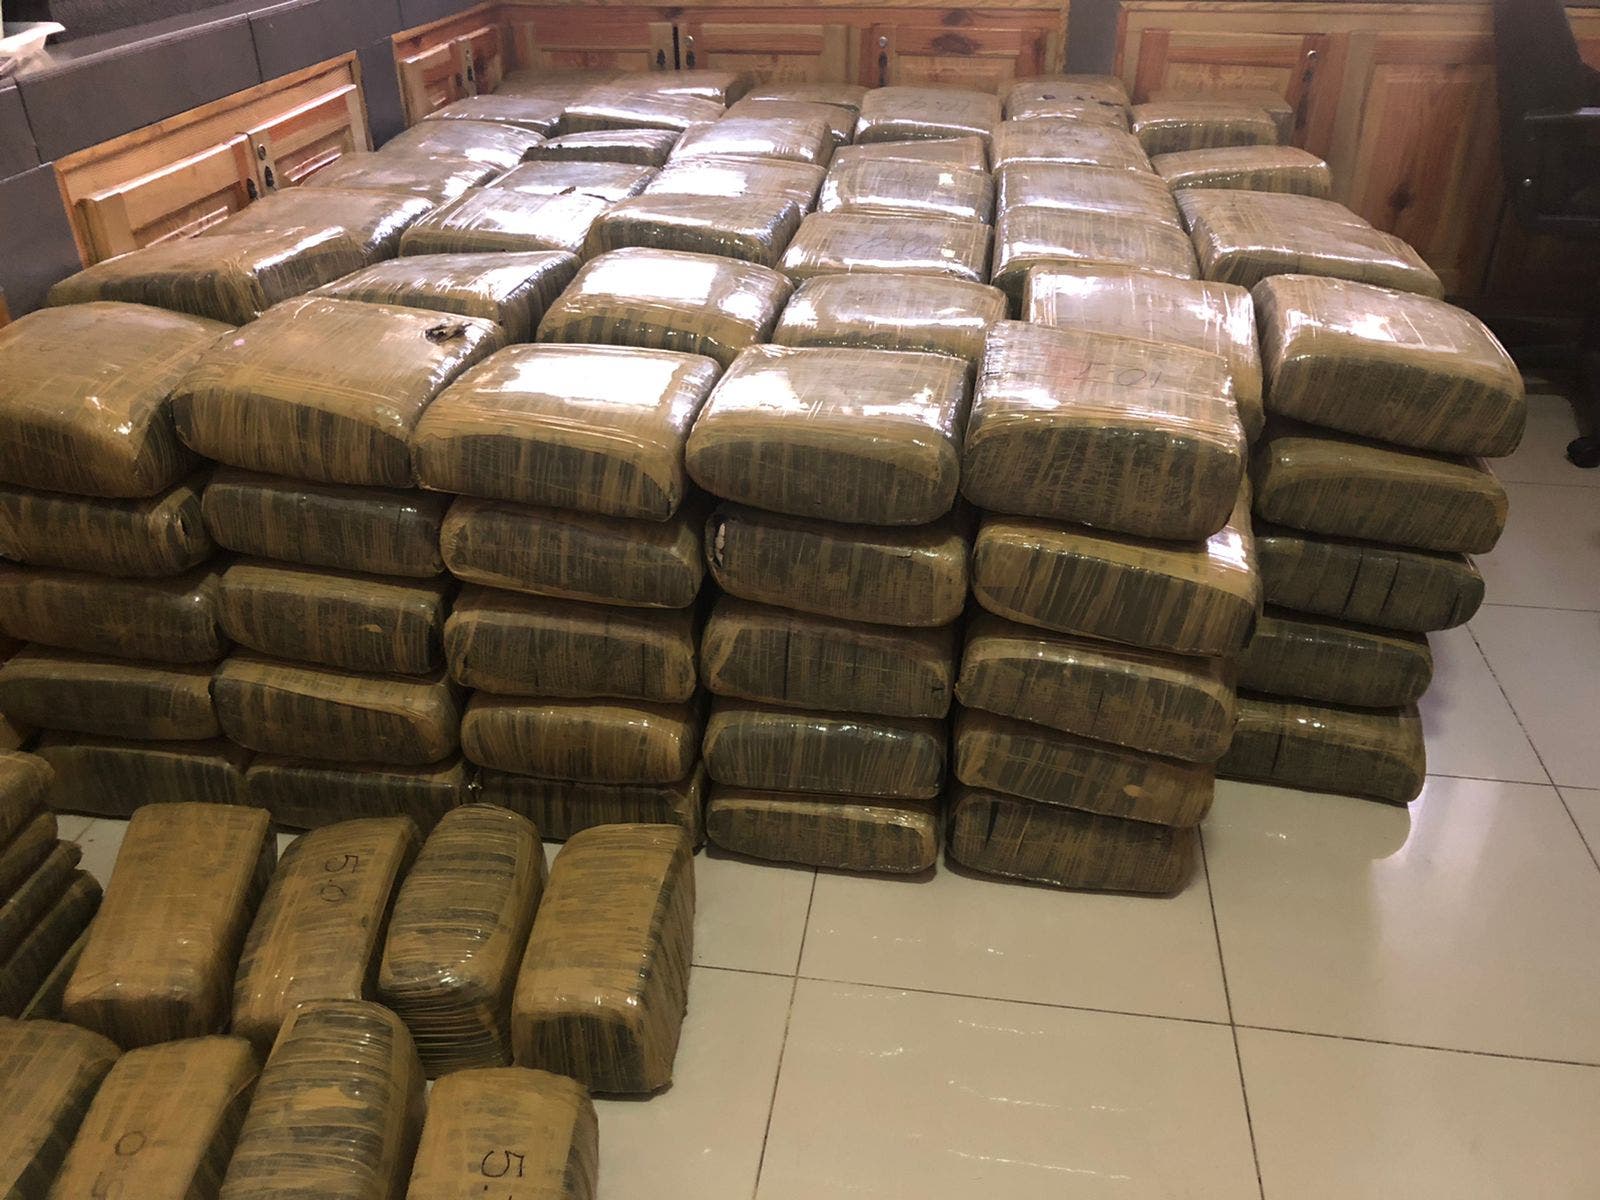 Ejército se incauta 243 paquetes de marihuana en Azua